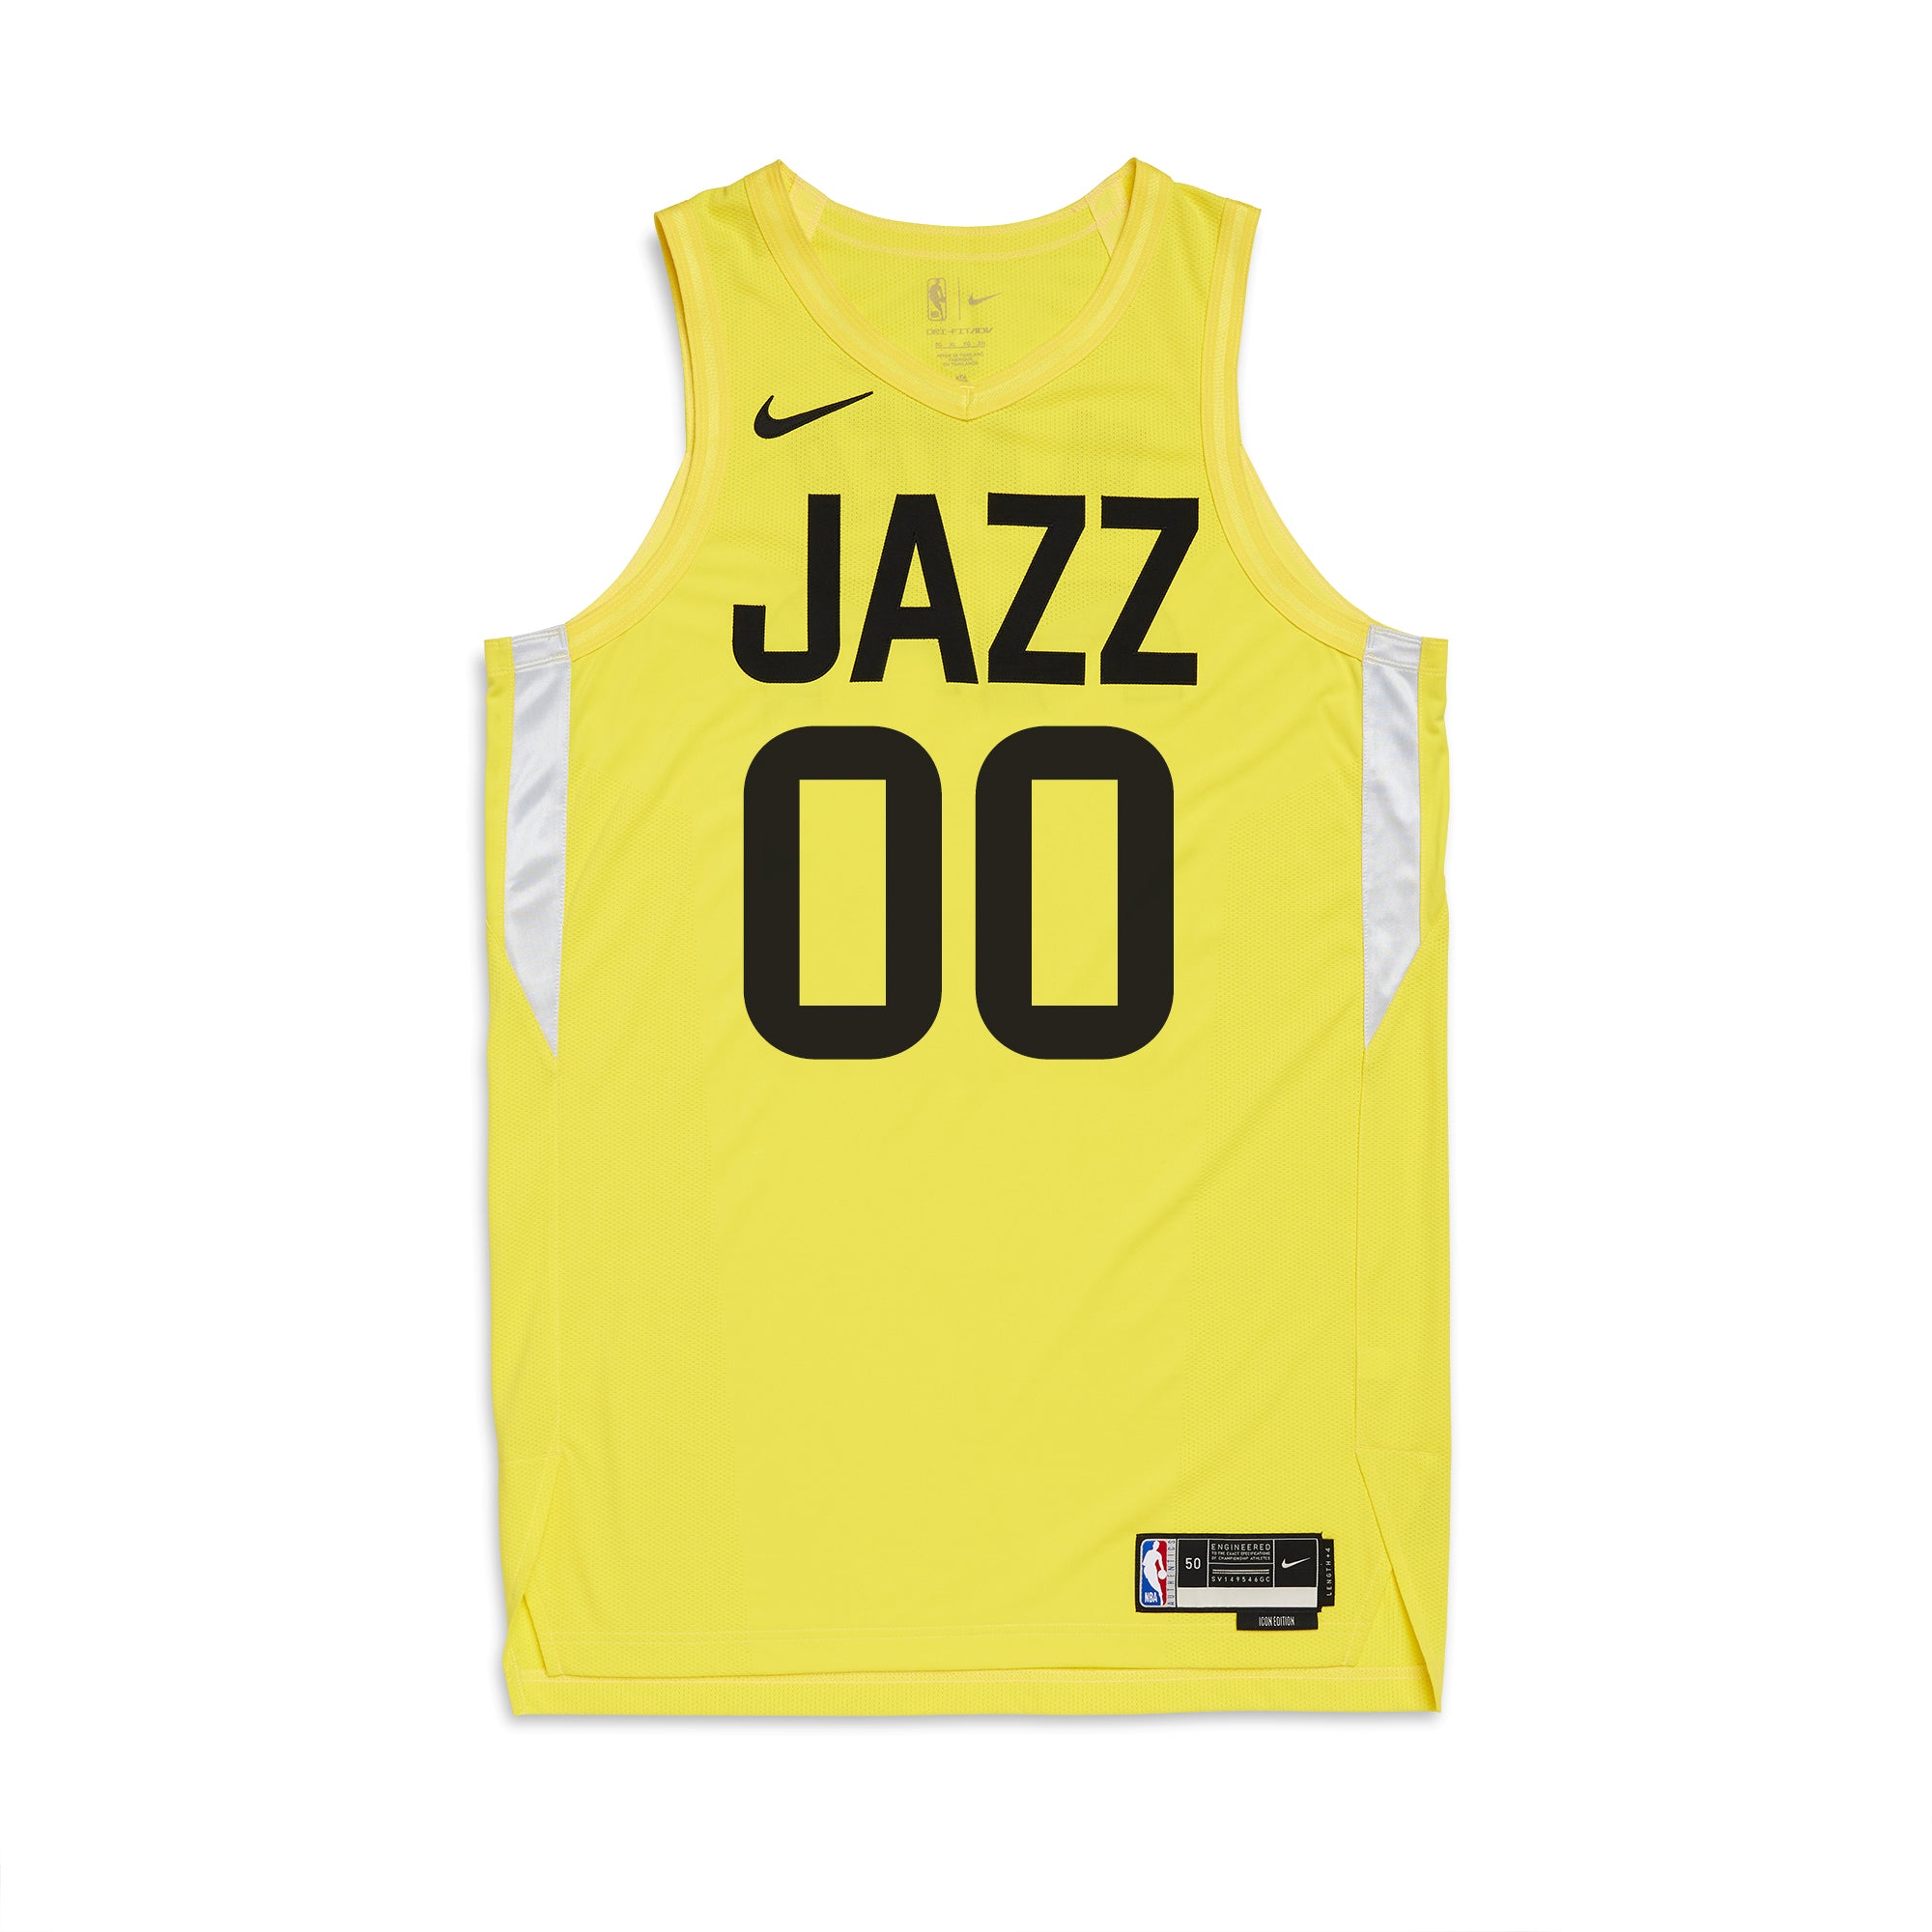 Utah Jazz Basketball Jersey For Babies, Youth, Women, or Men